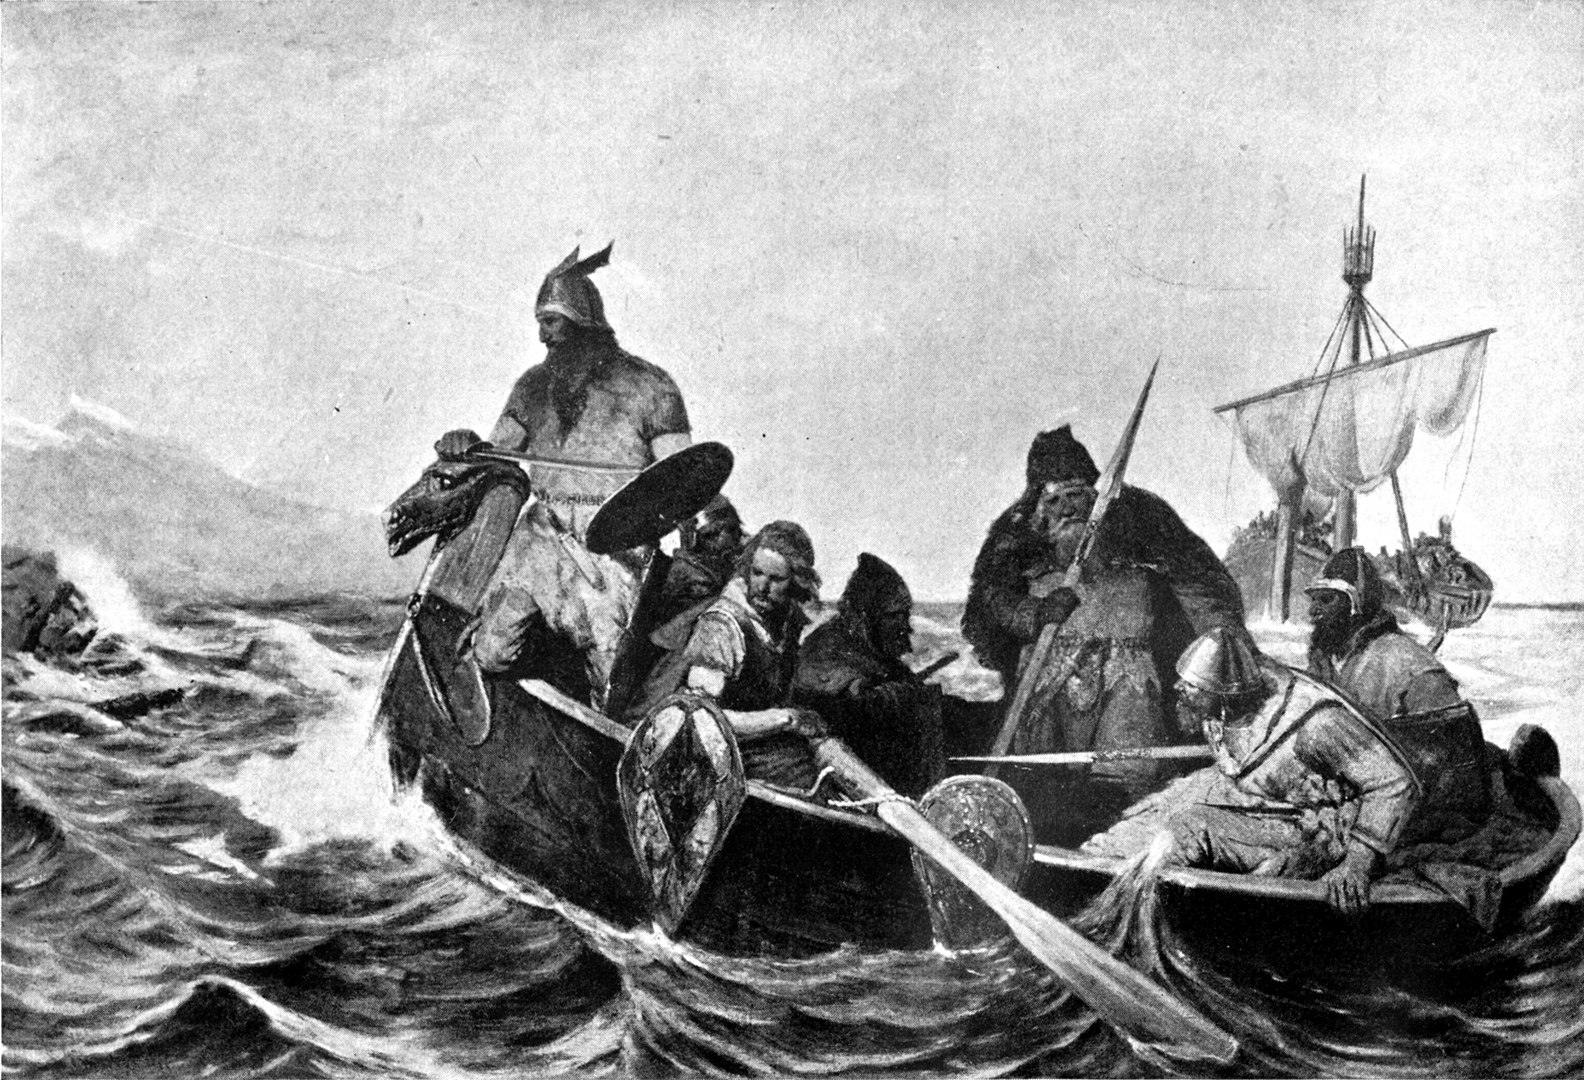 Norsemen in a ship in the ocean